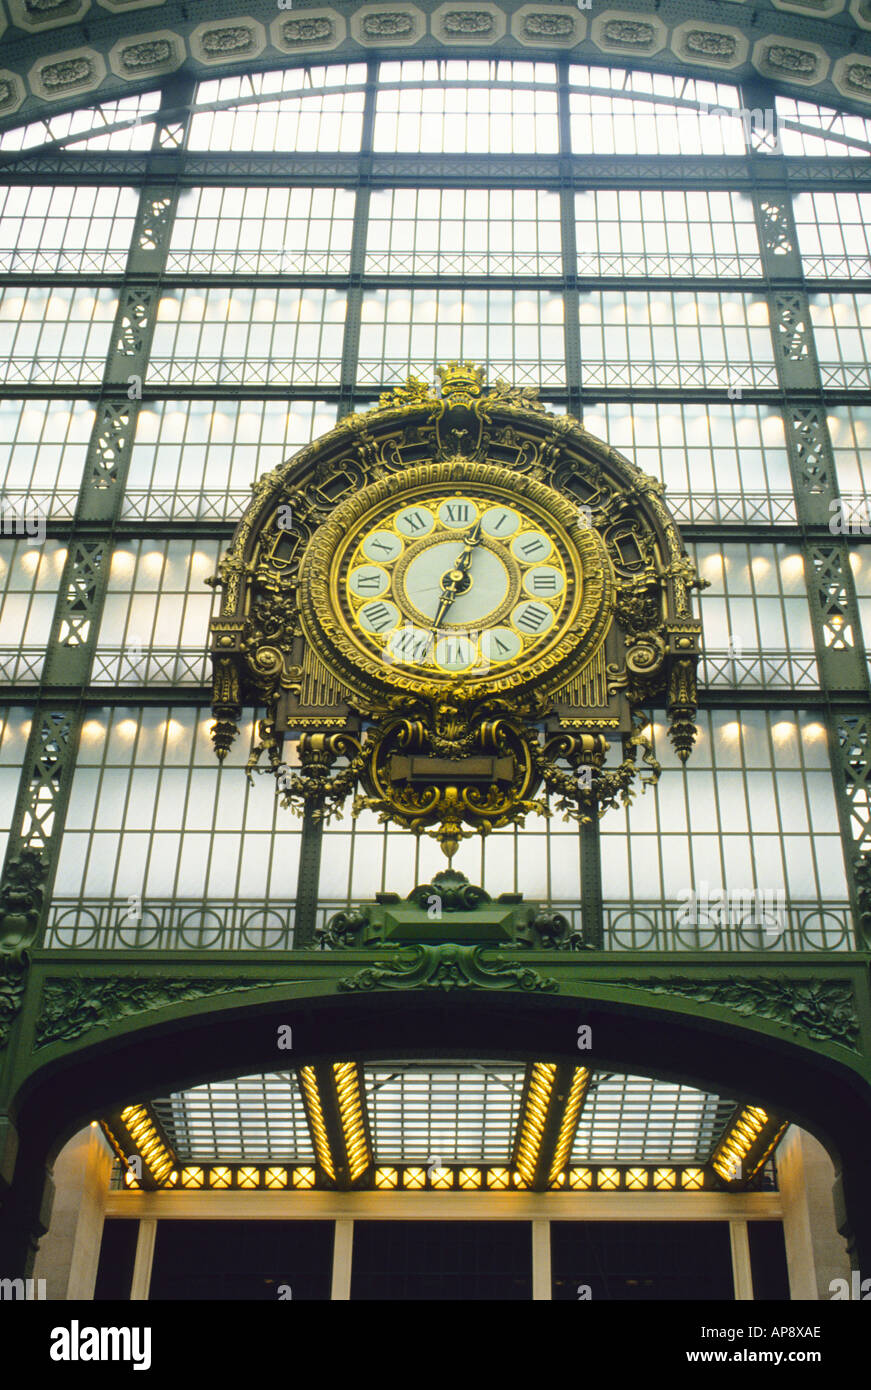 Paris : intérieur du Musée d'Orsay ancienne gare ferroviaire Gare d'Orsay.Belle époque.France du XIXe siècle.Horloge du musée par Victor Laloux Banque D'Images